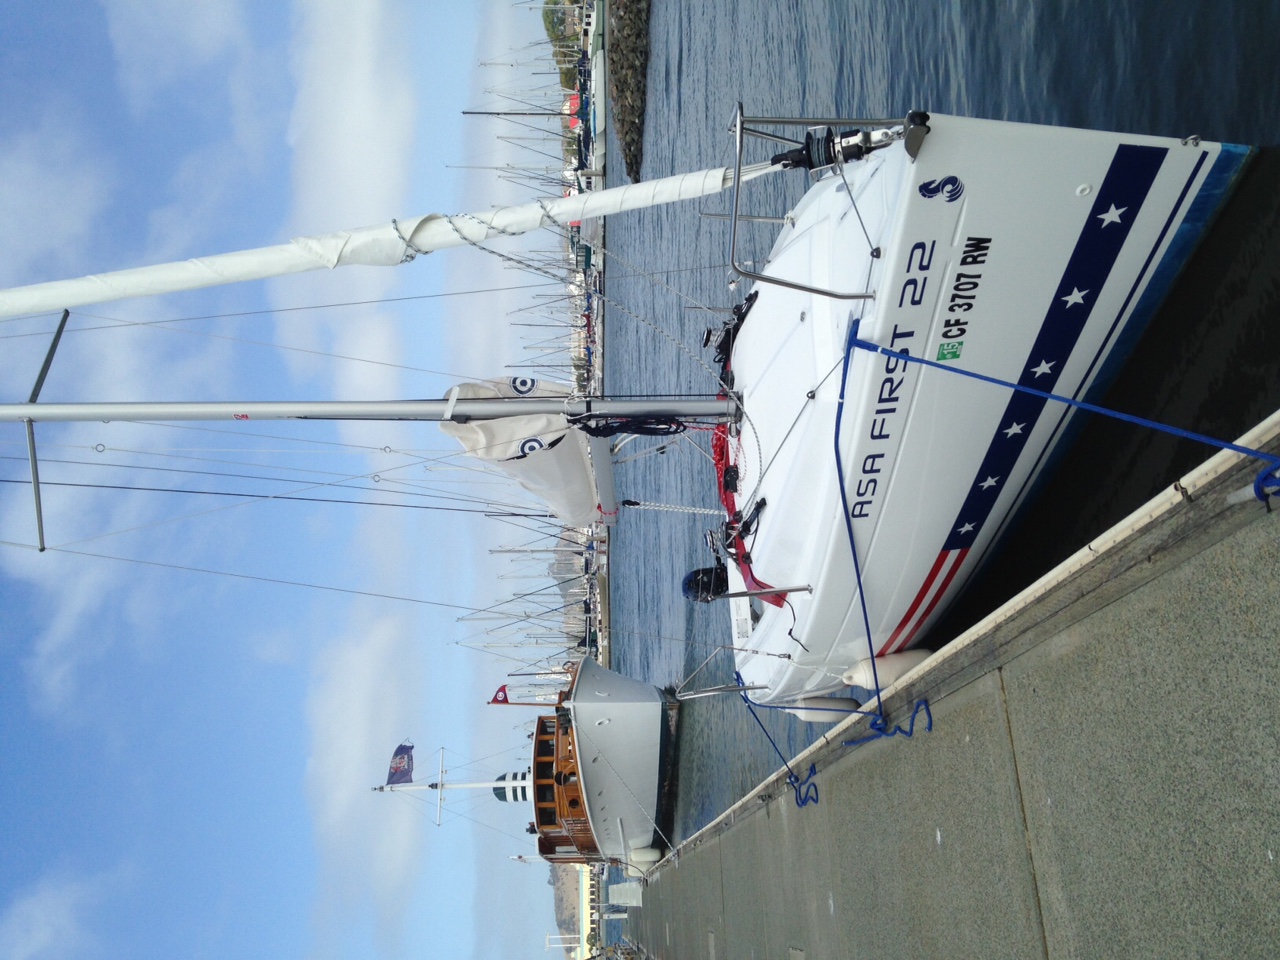 Tradewinds Sailing Club Fleet boats